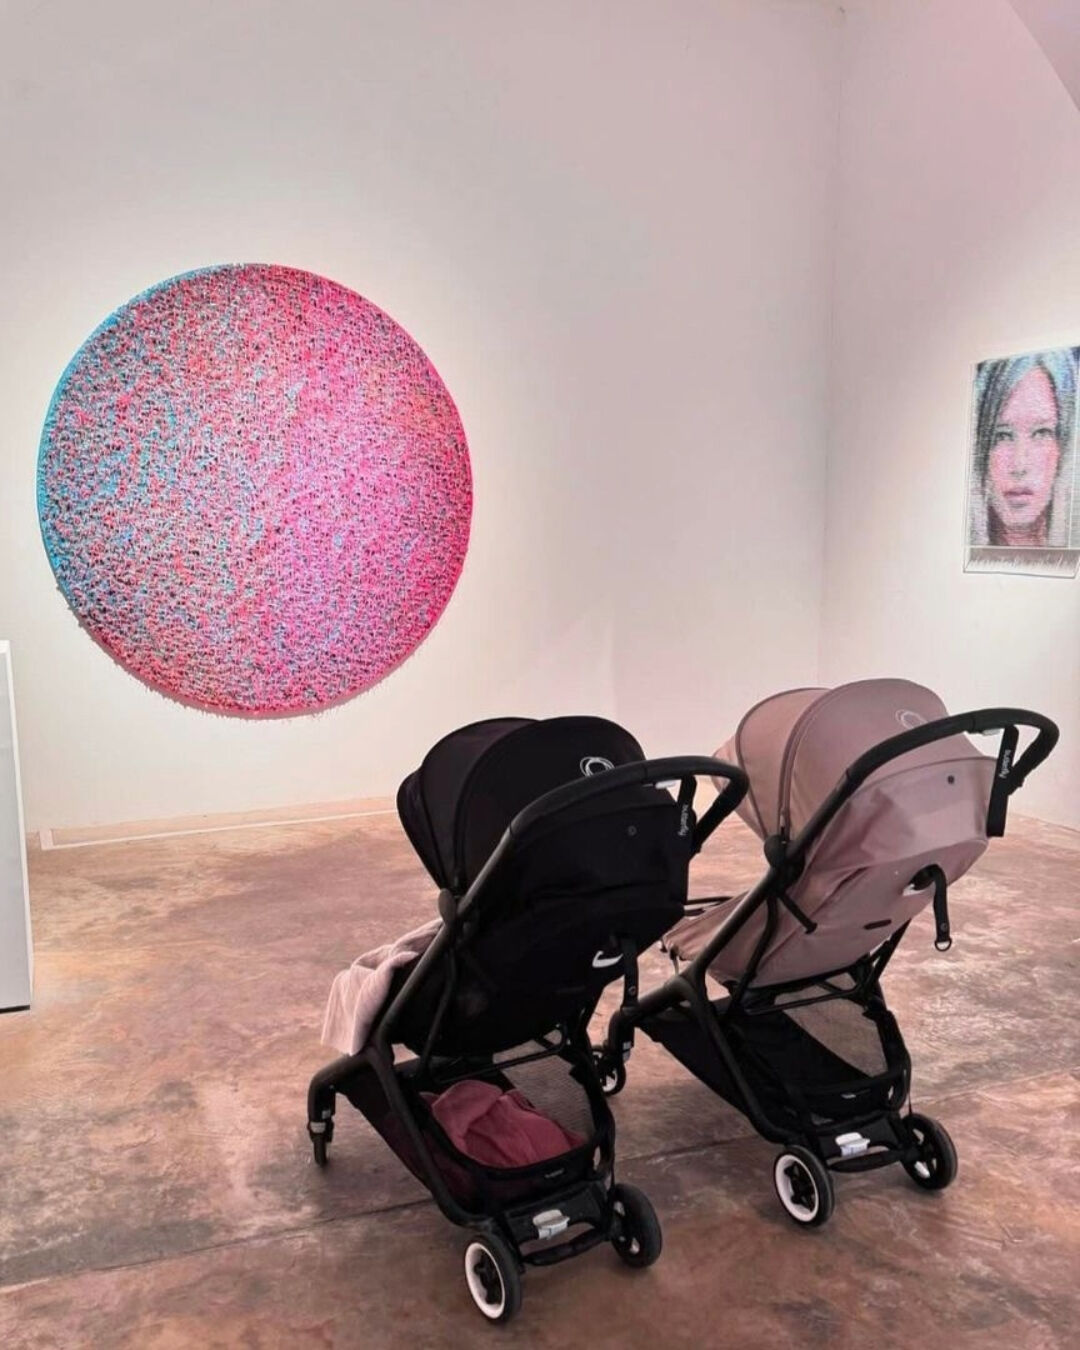 Dos sillas de paseo Bugaboo Butterfly lado a lado en una galería de arte, frente a una colorida obra artística circular y una escultura. 